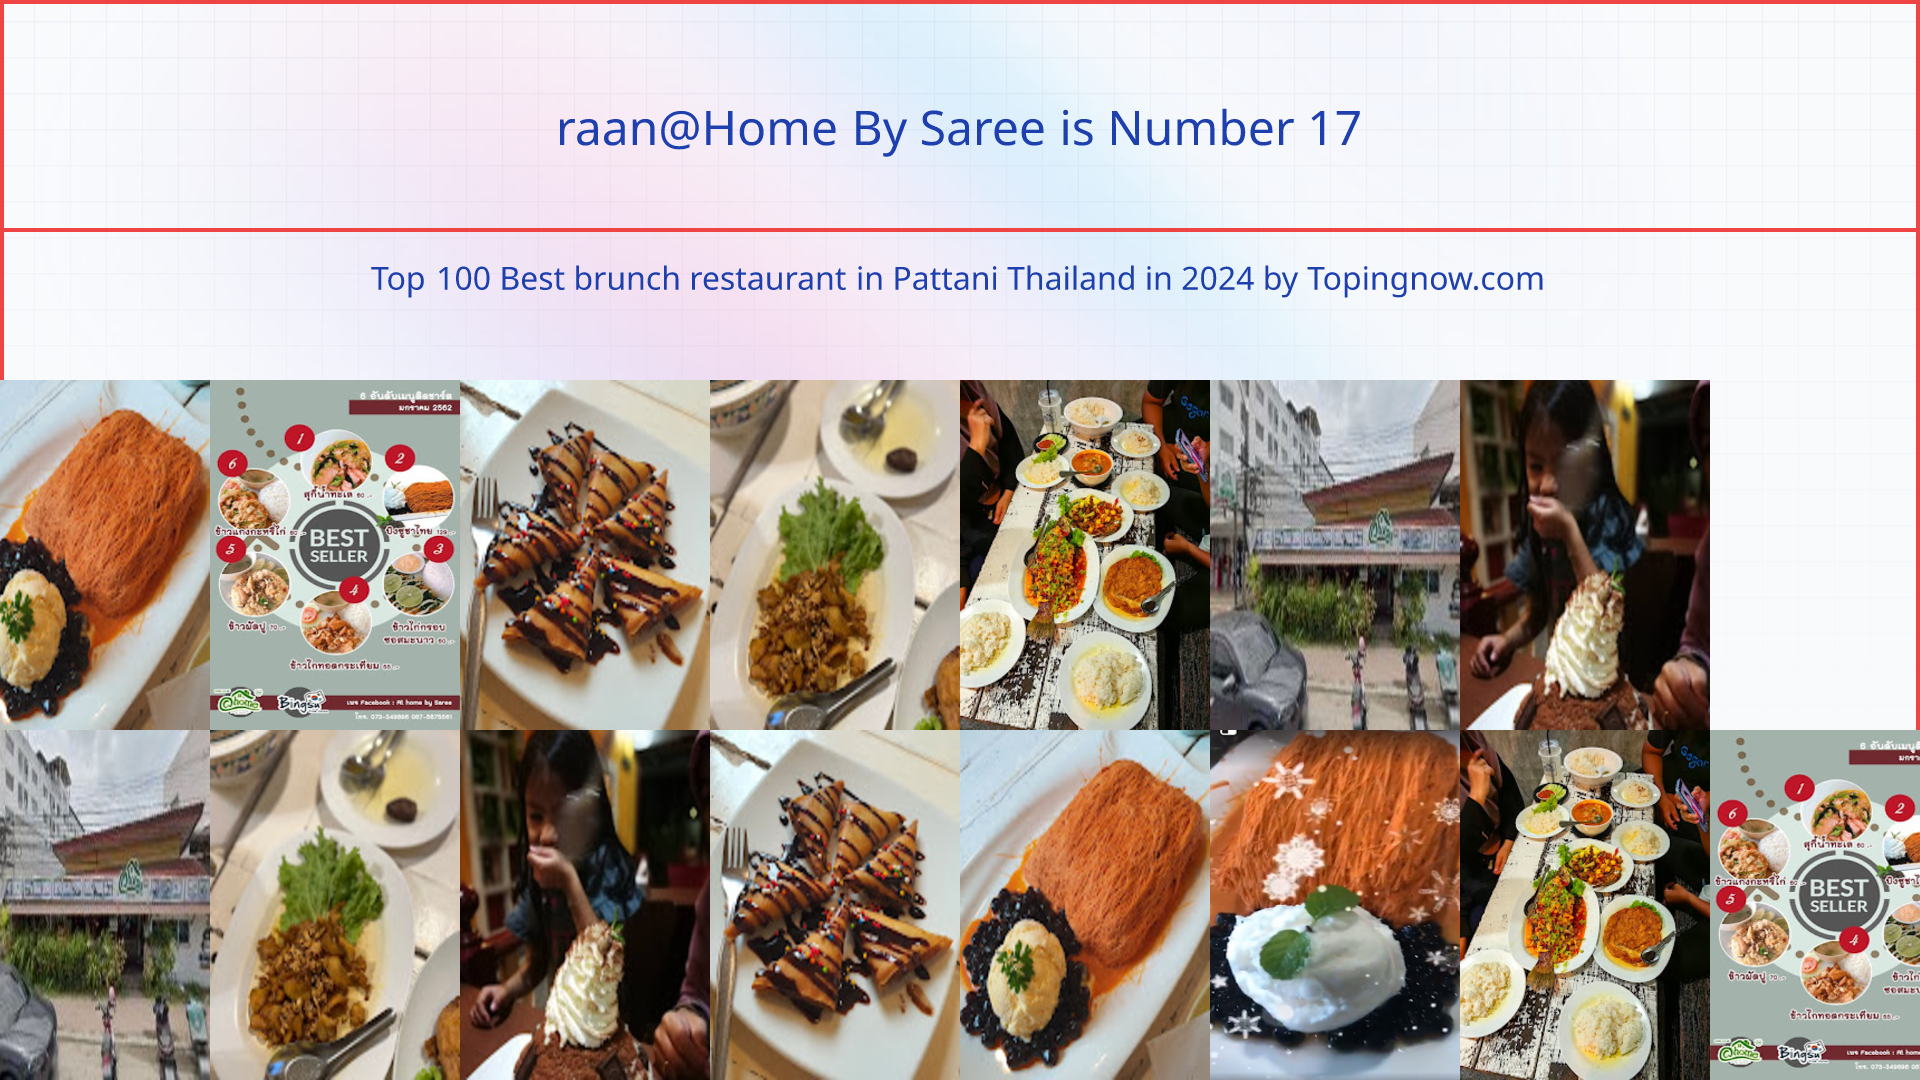 raan@Home By Saree: Top 100 Best brunch restaurant in Pattani Thailand in 2024